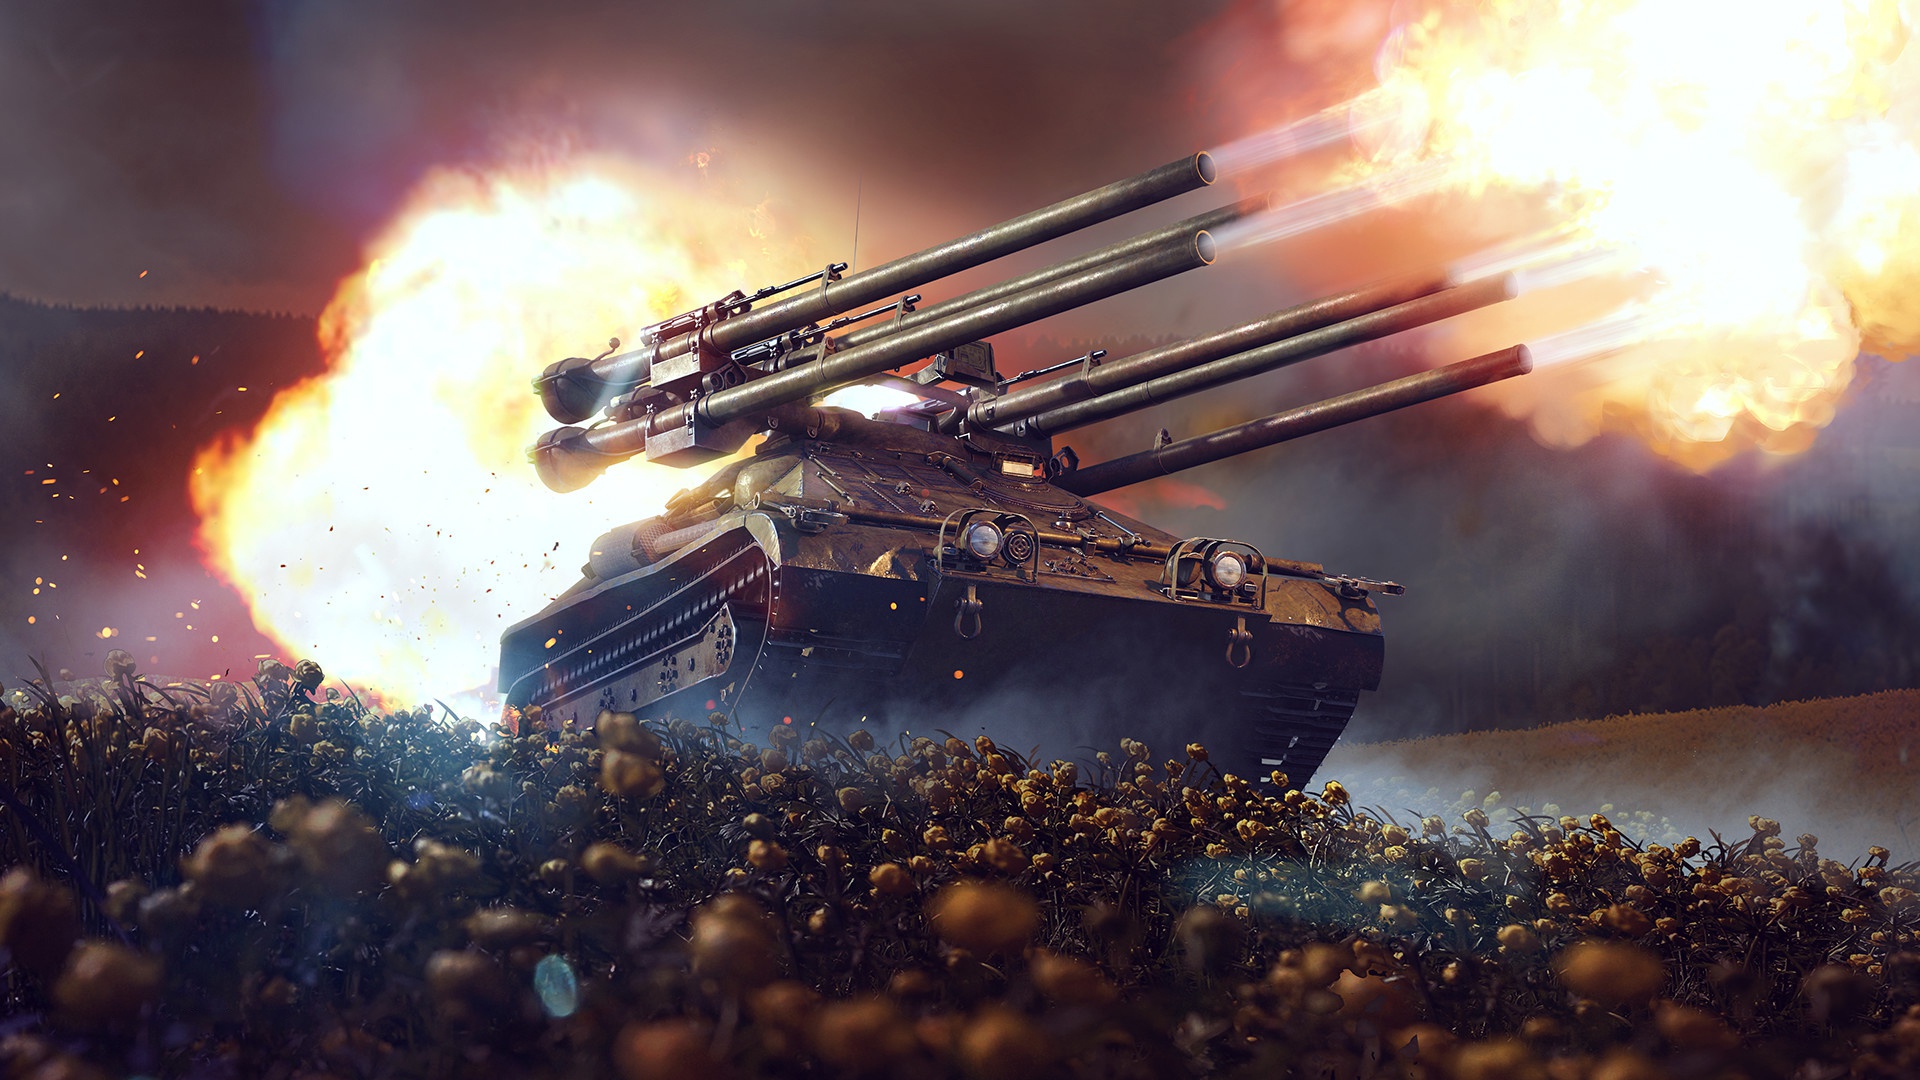 Video Games Video Game Art Digital Art Rocket Launchers Tank Fire War Flowers War Thunder Military M 1920x1080